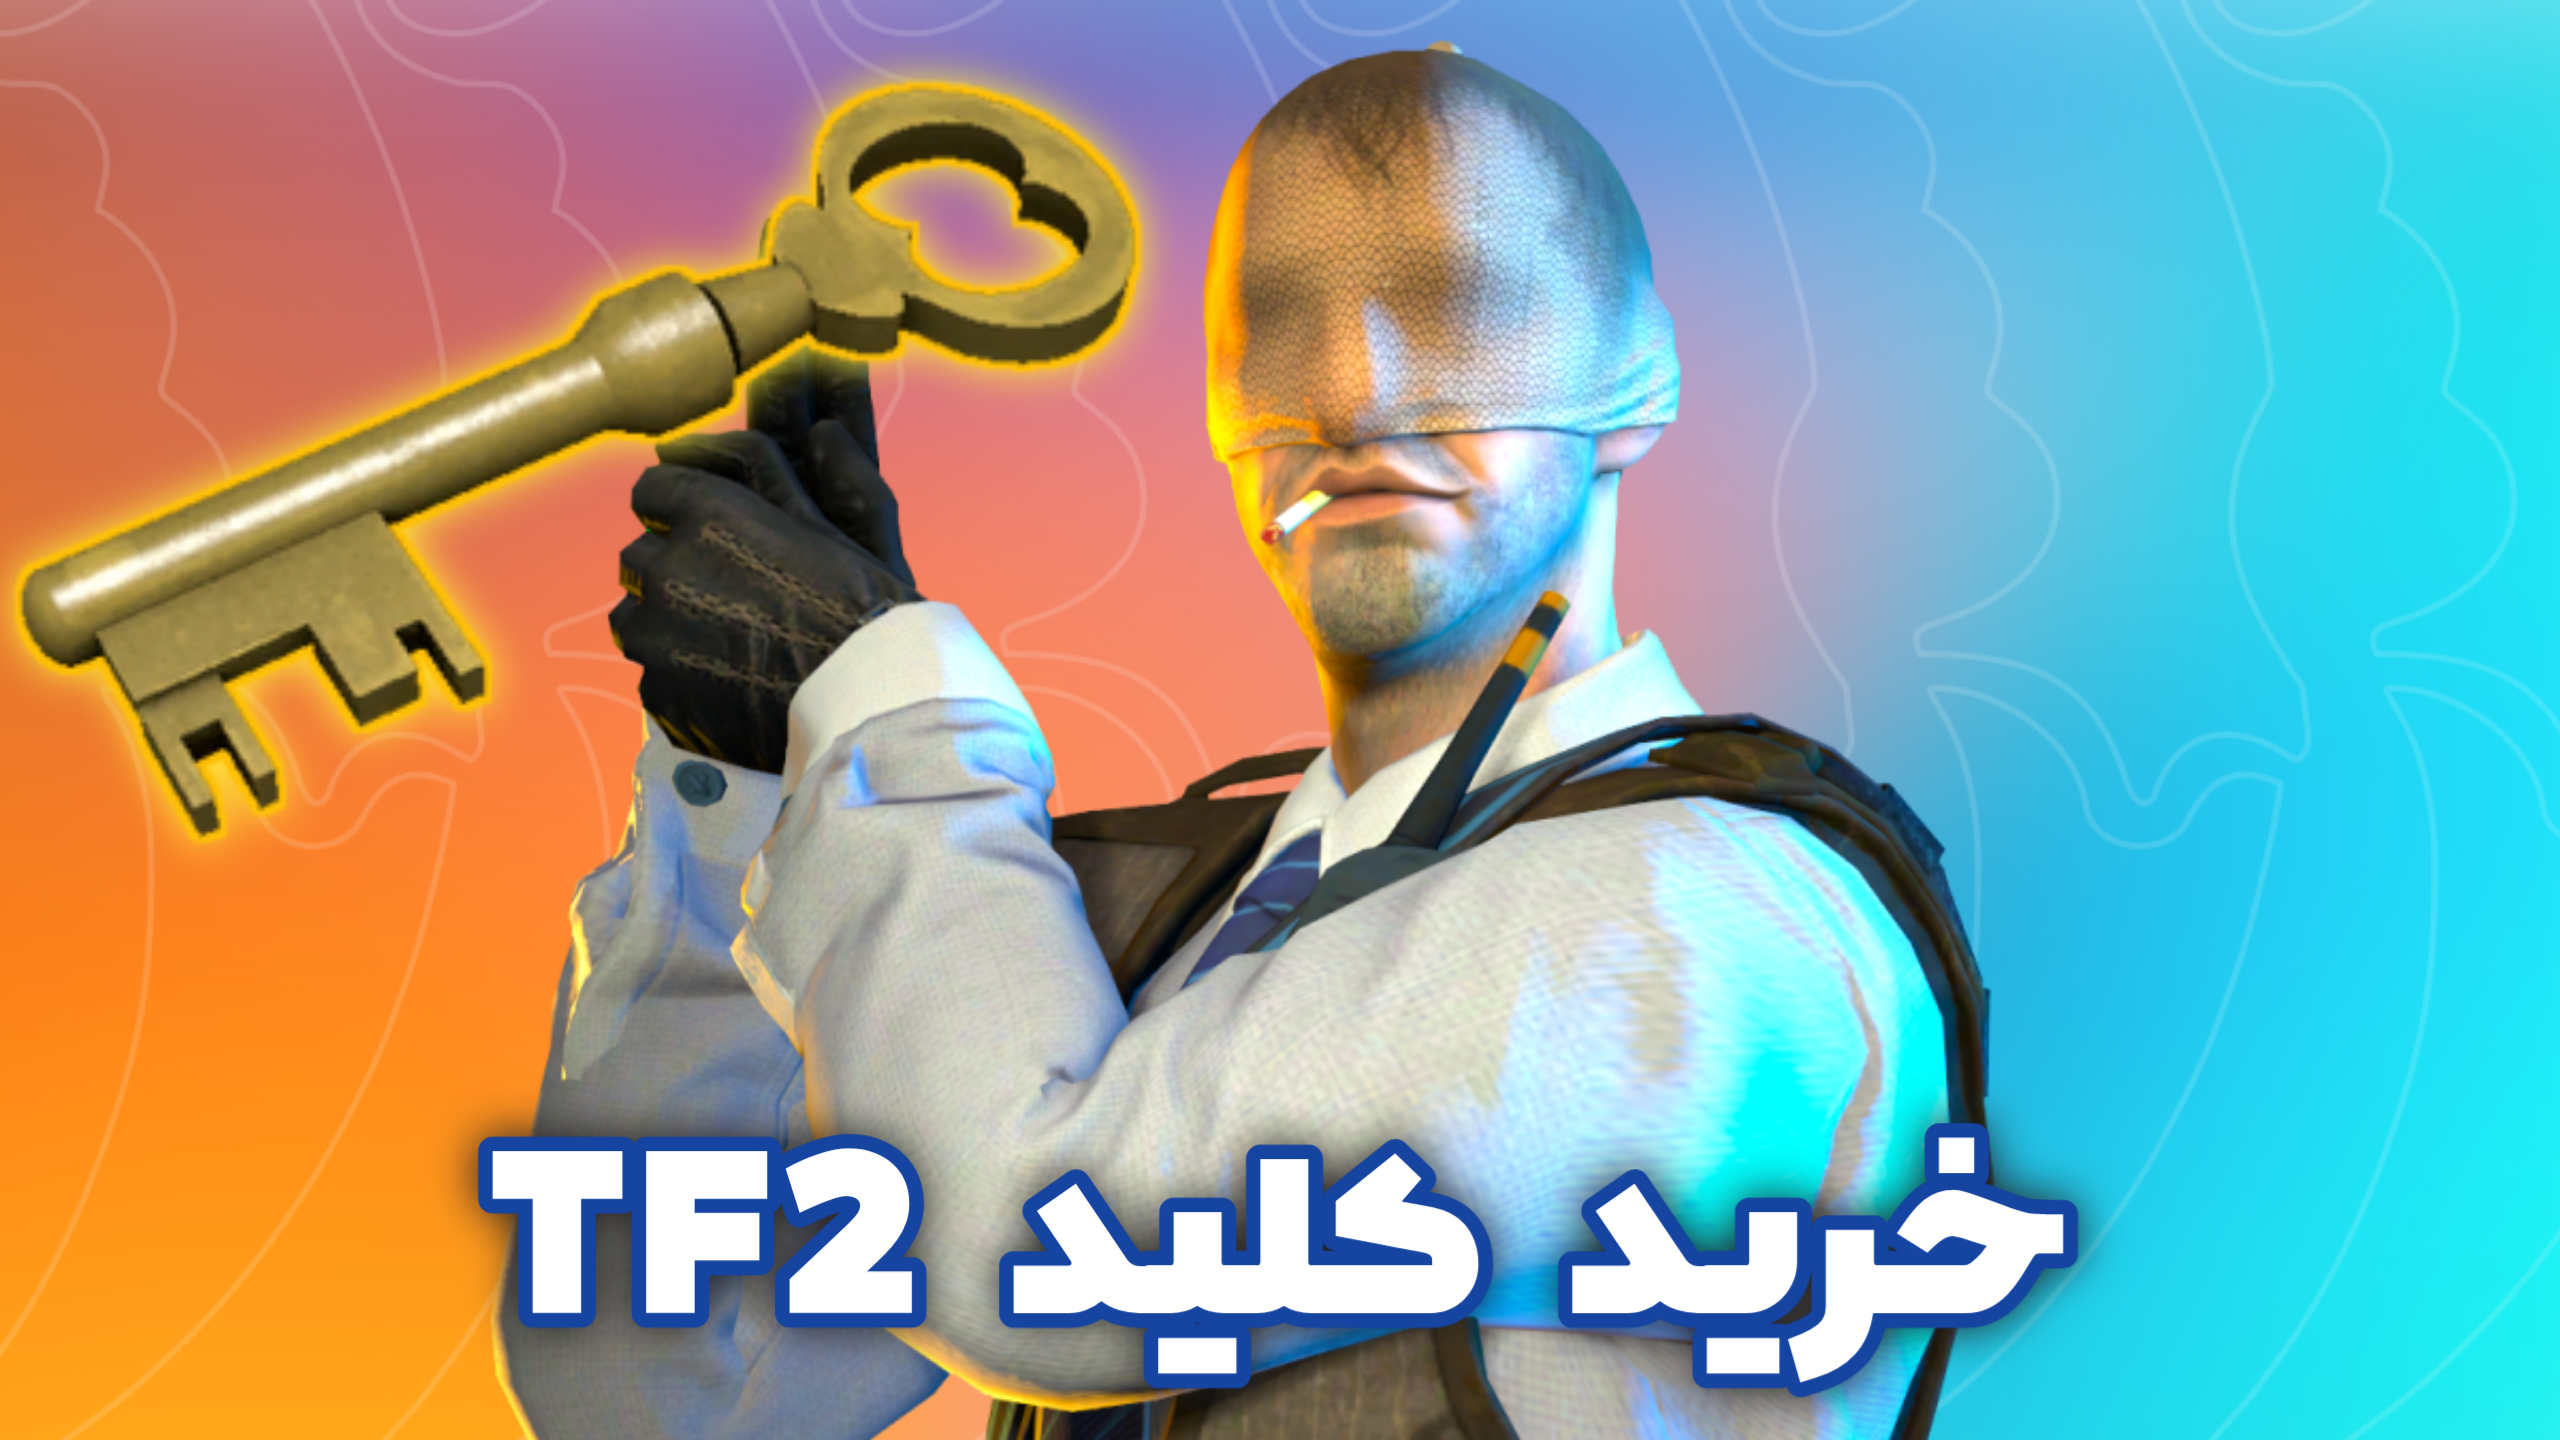 خرید کلید tf2 - فروش کلید tf2